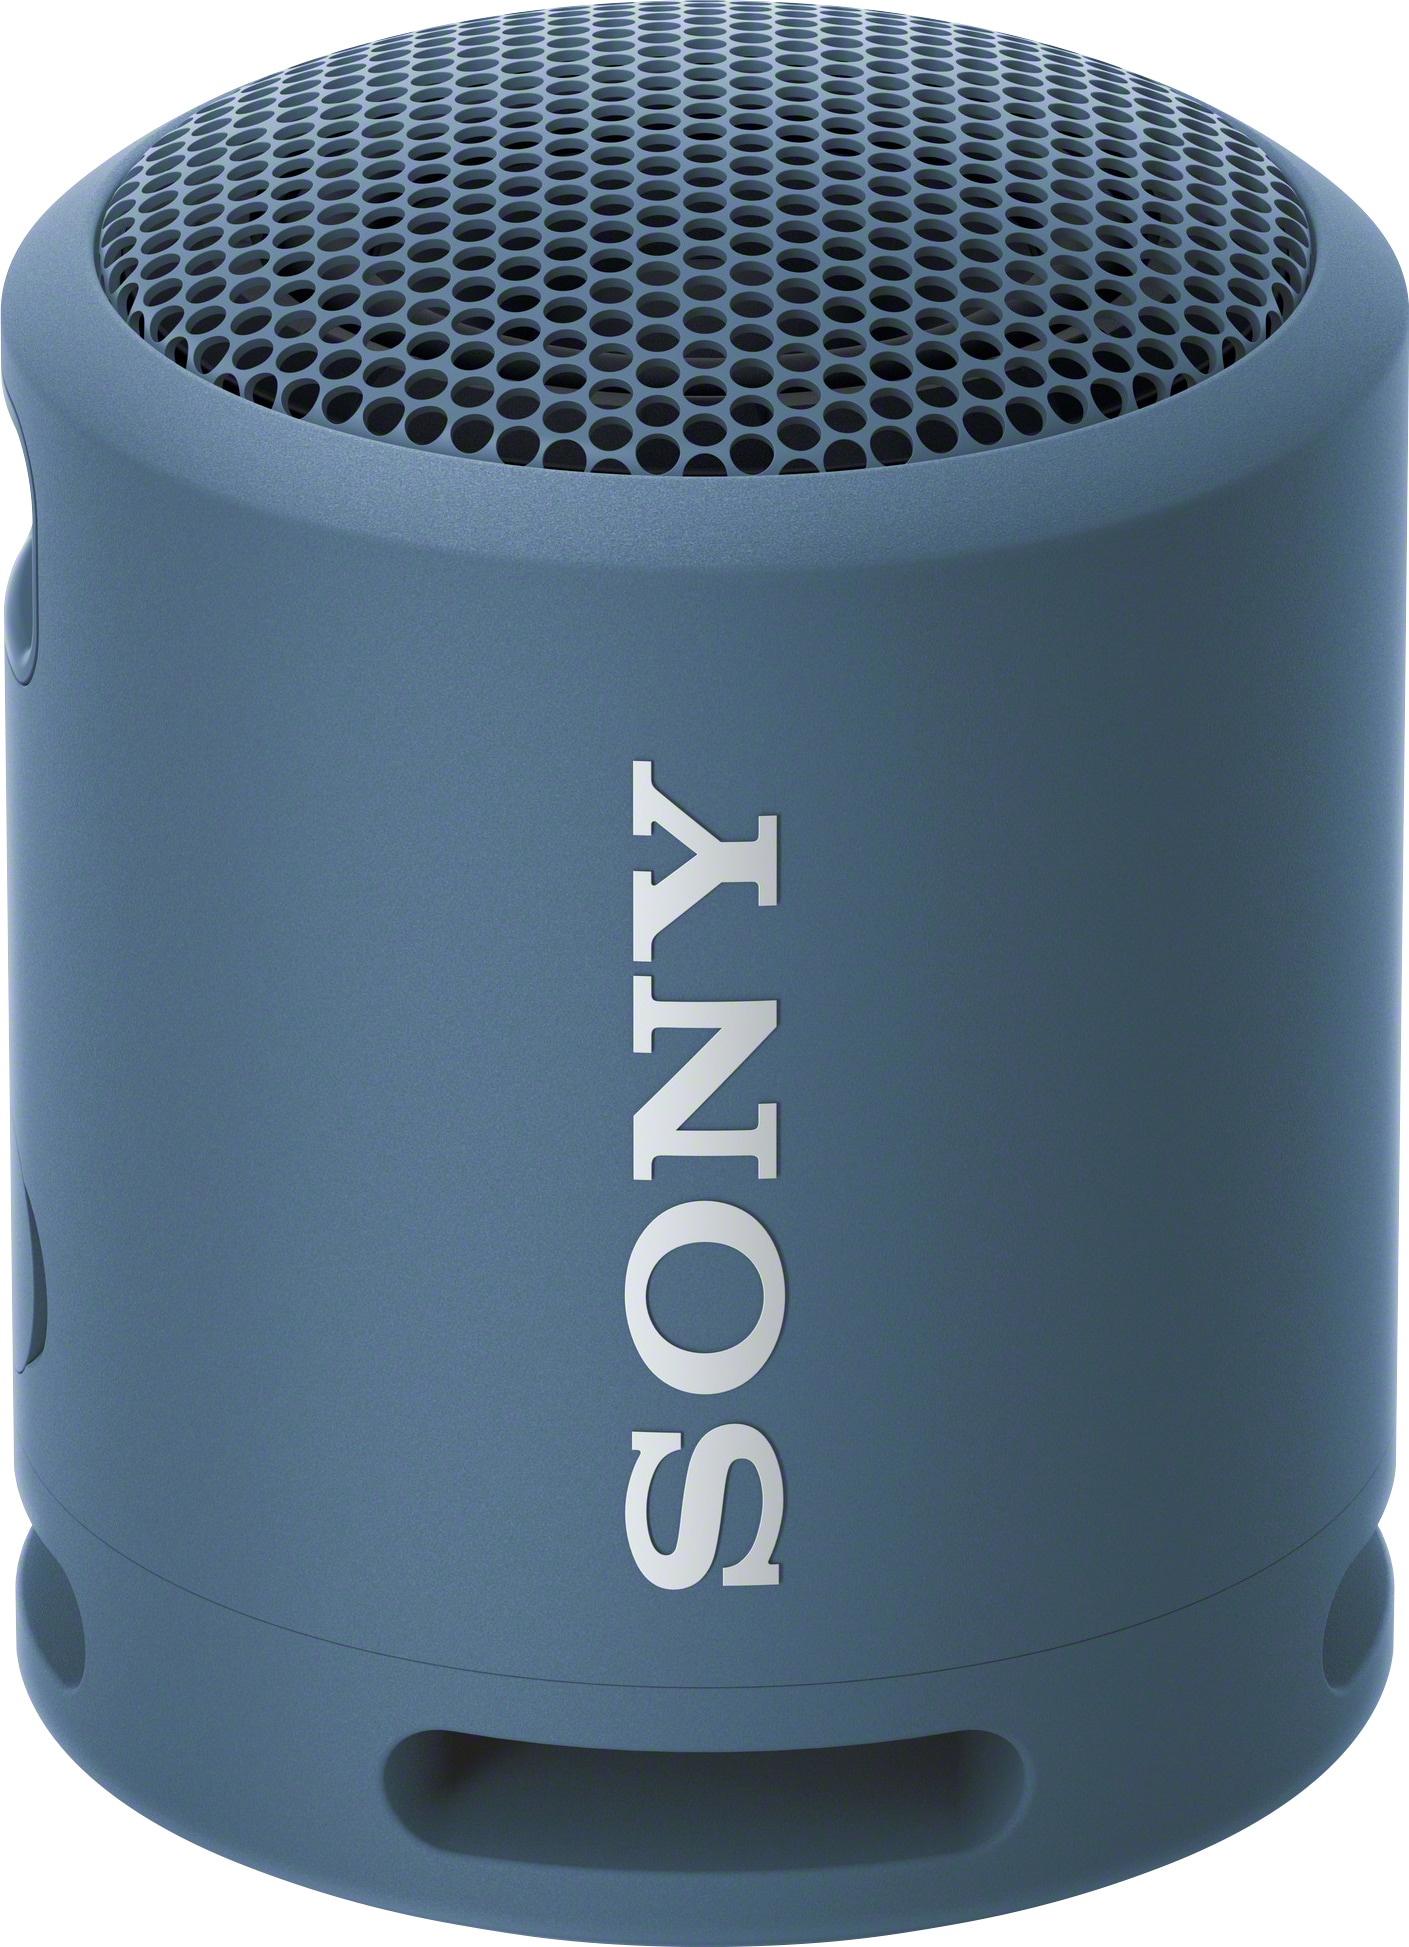 Sony bærbar trådløs høyttaler SRS-XB13 (blå) - Elkjøp